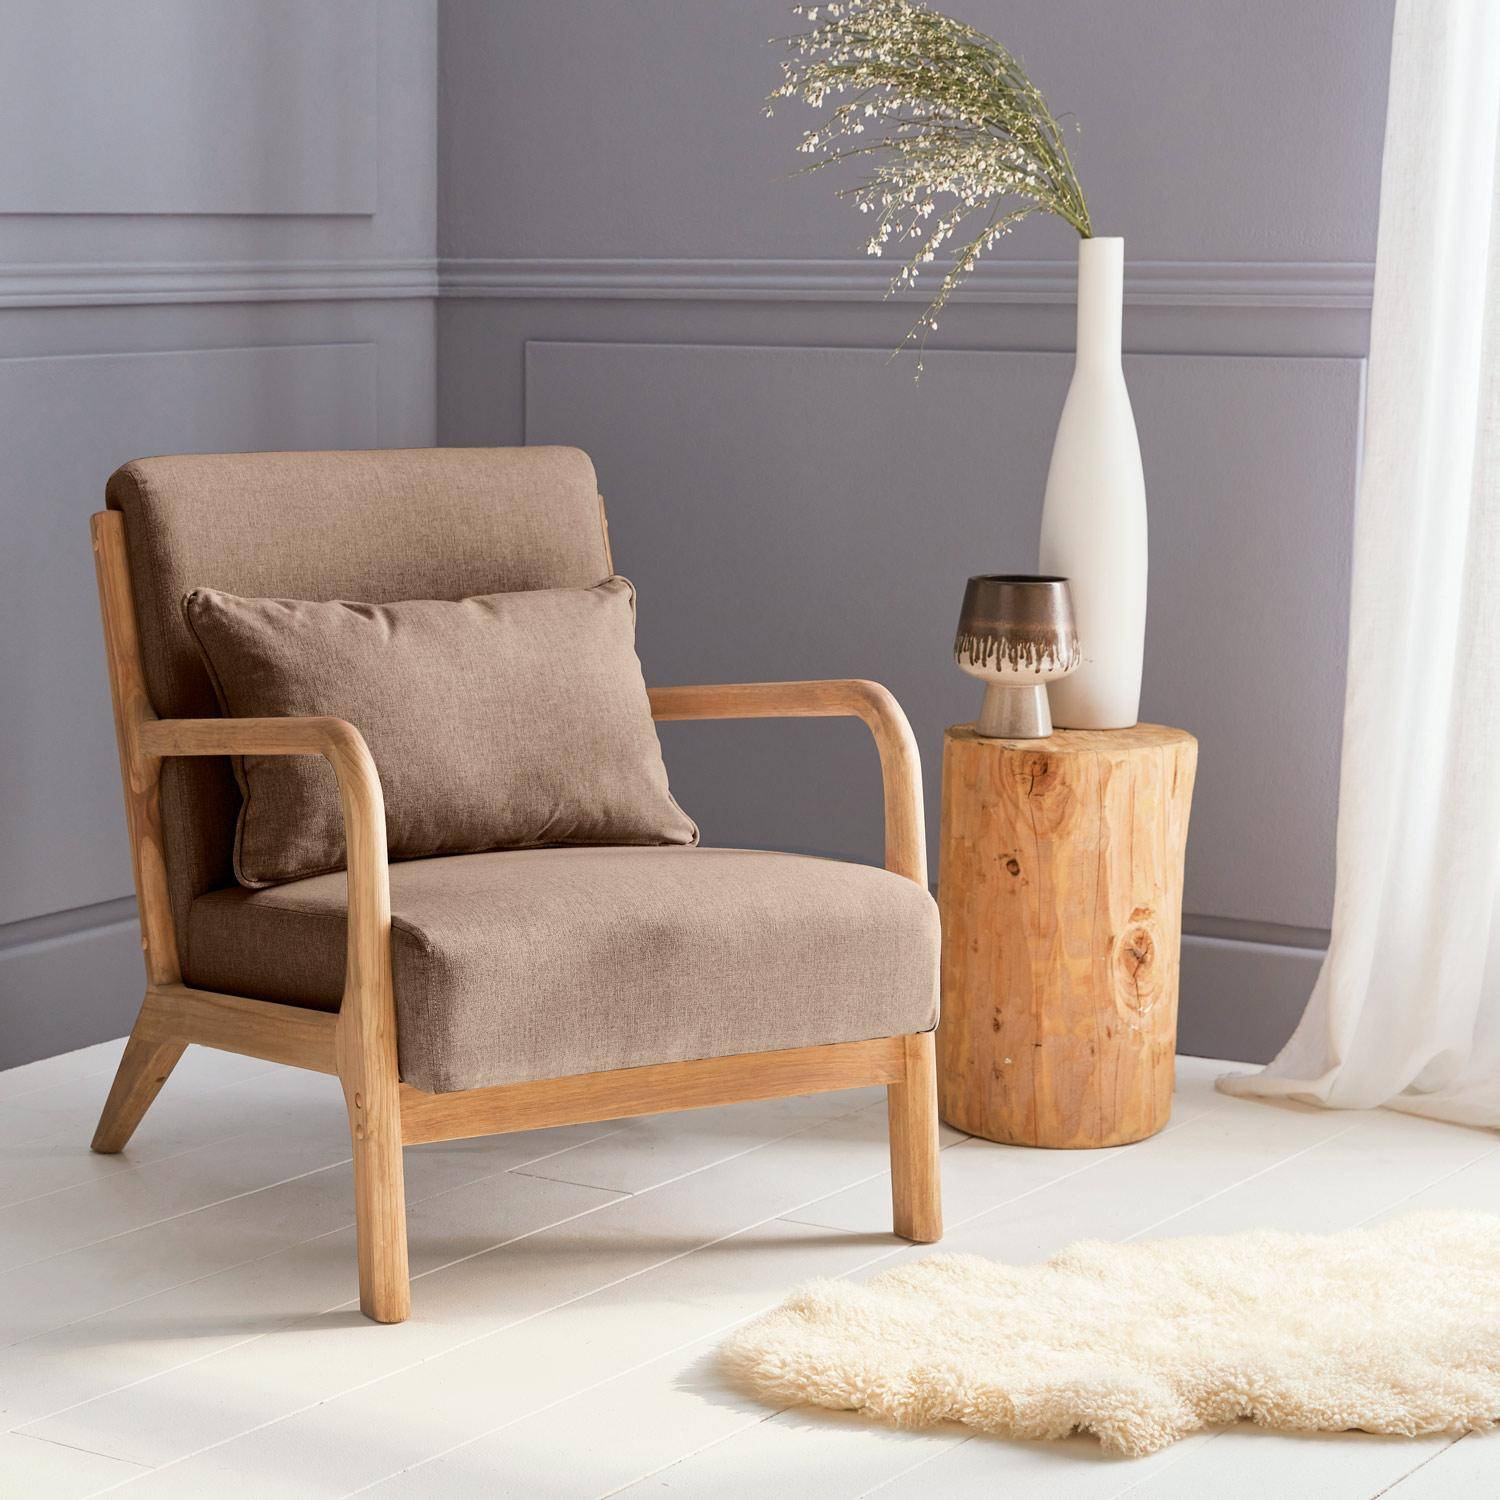 Sillón de diseño marrón en madera y tela, 1 asiento recto fijo, patas de compás escandinavas, armazón de madera maciza, asiento cómodo,sweeek,Photo1